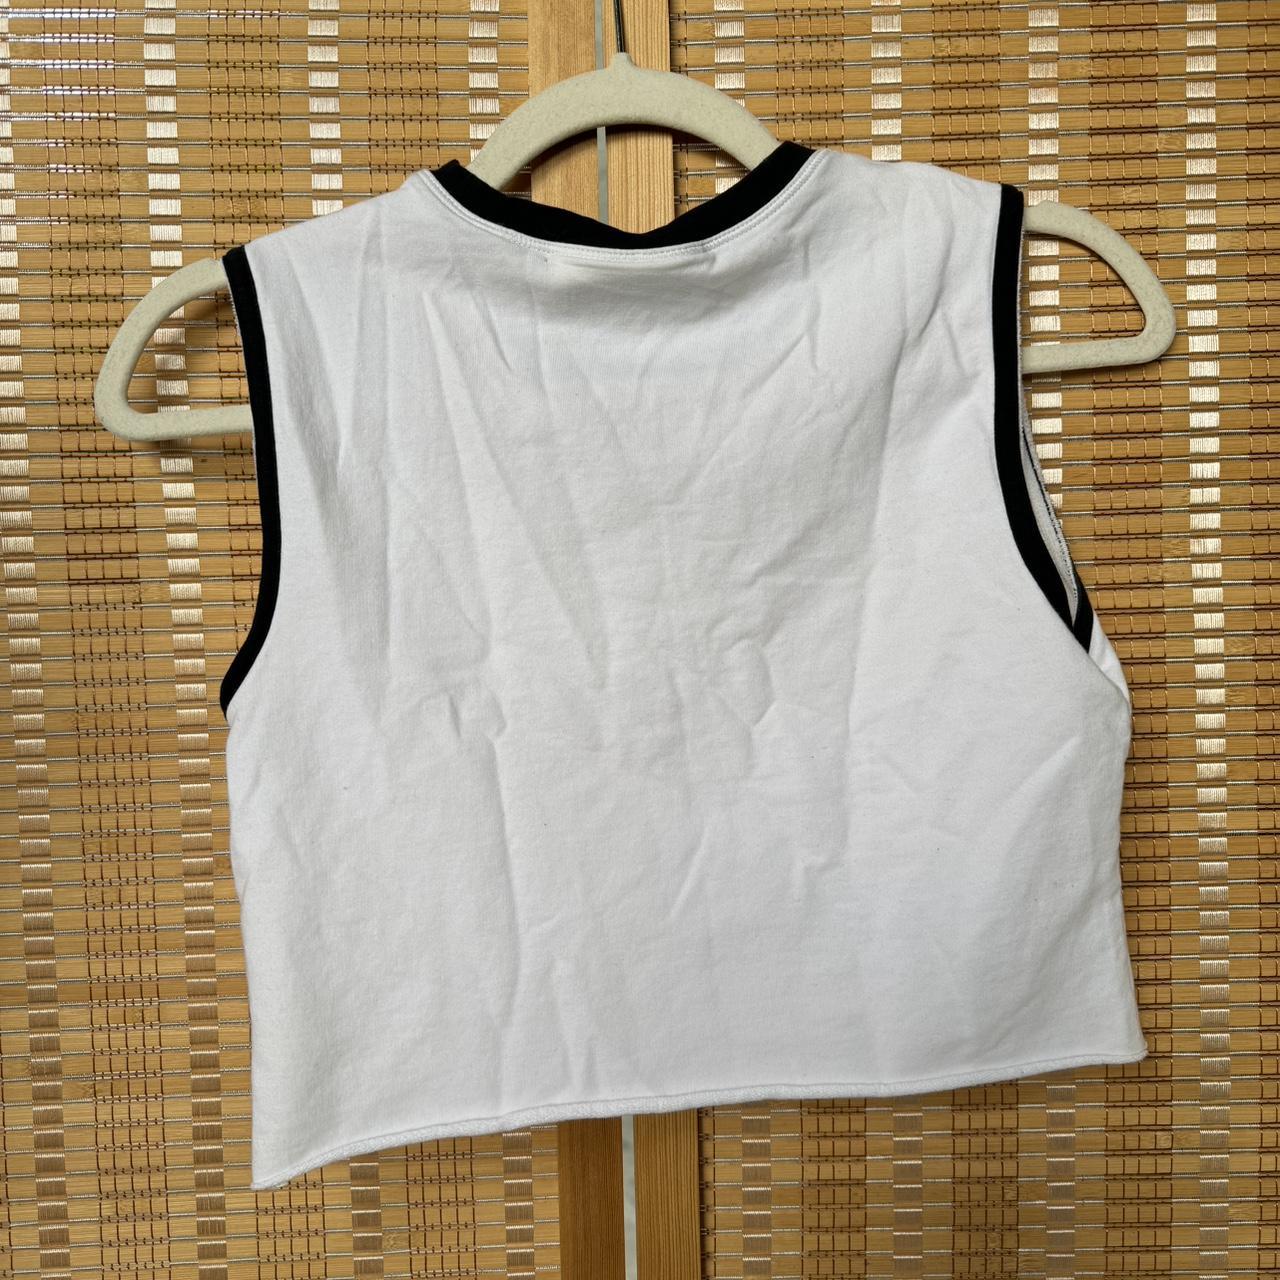 New Balance Women's White T-shirt (2)